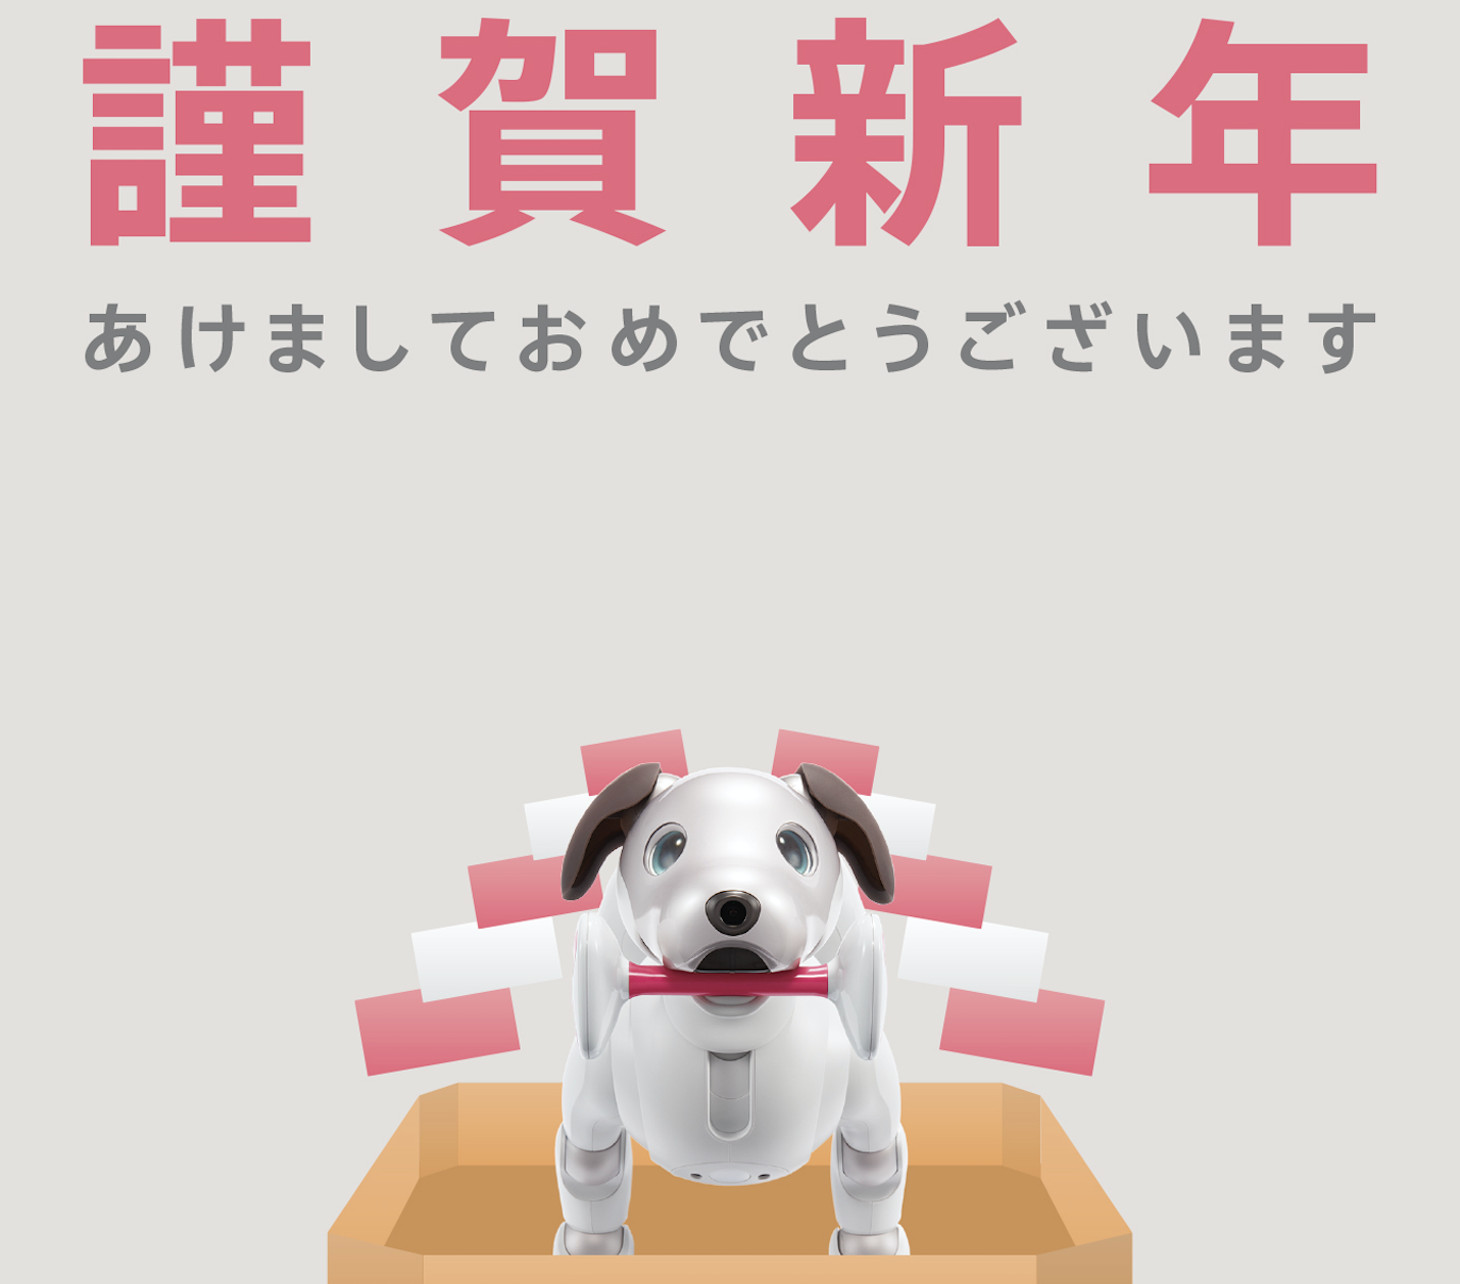 慶祝aibo機械狗上市日本開放可愛狗狗桌布 賀卡免費下載 Ettoday3c家電新聞 Ettoday新聞雲